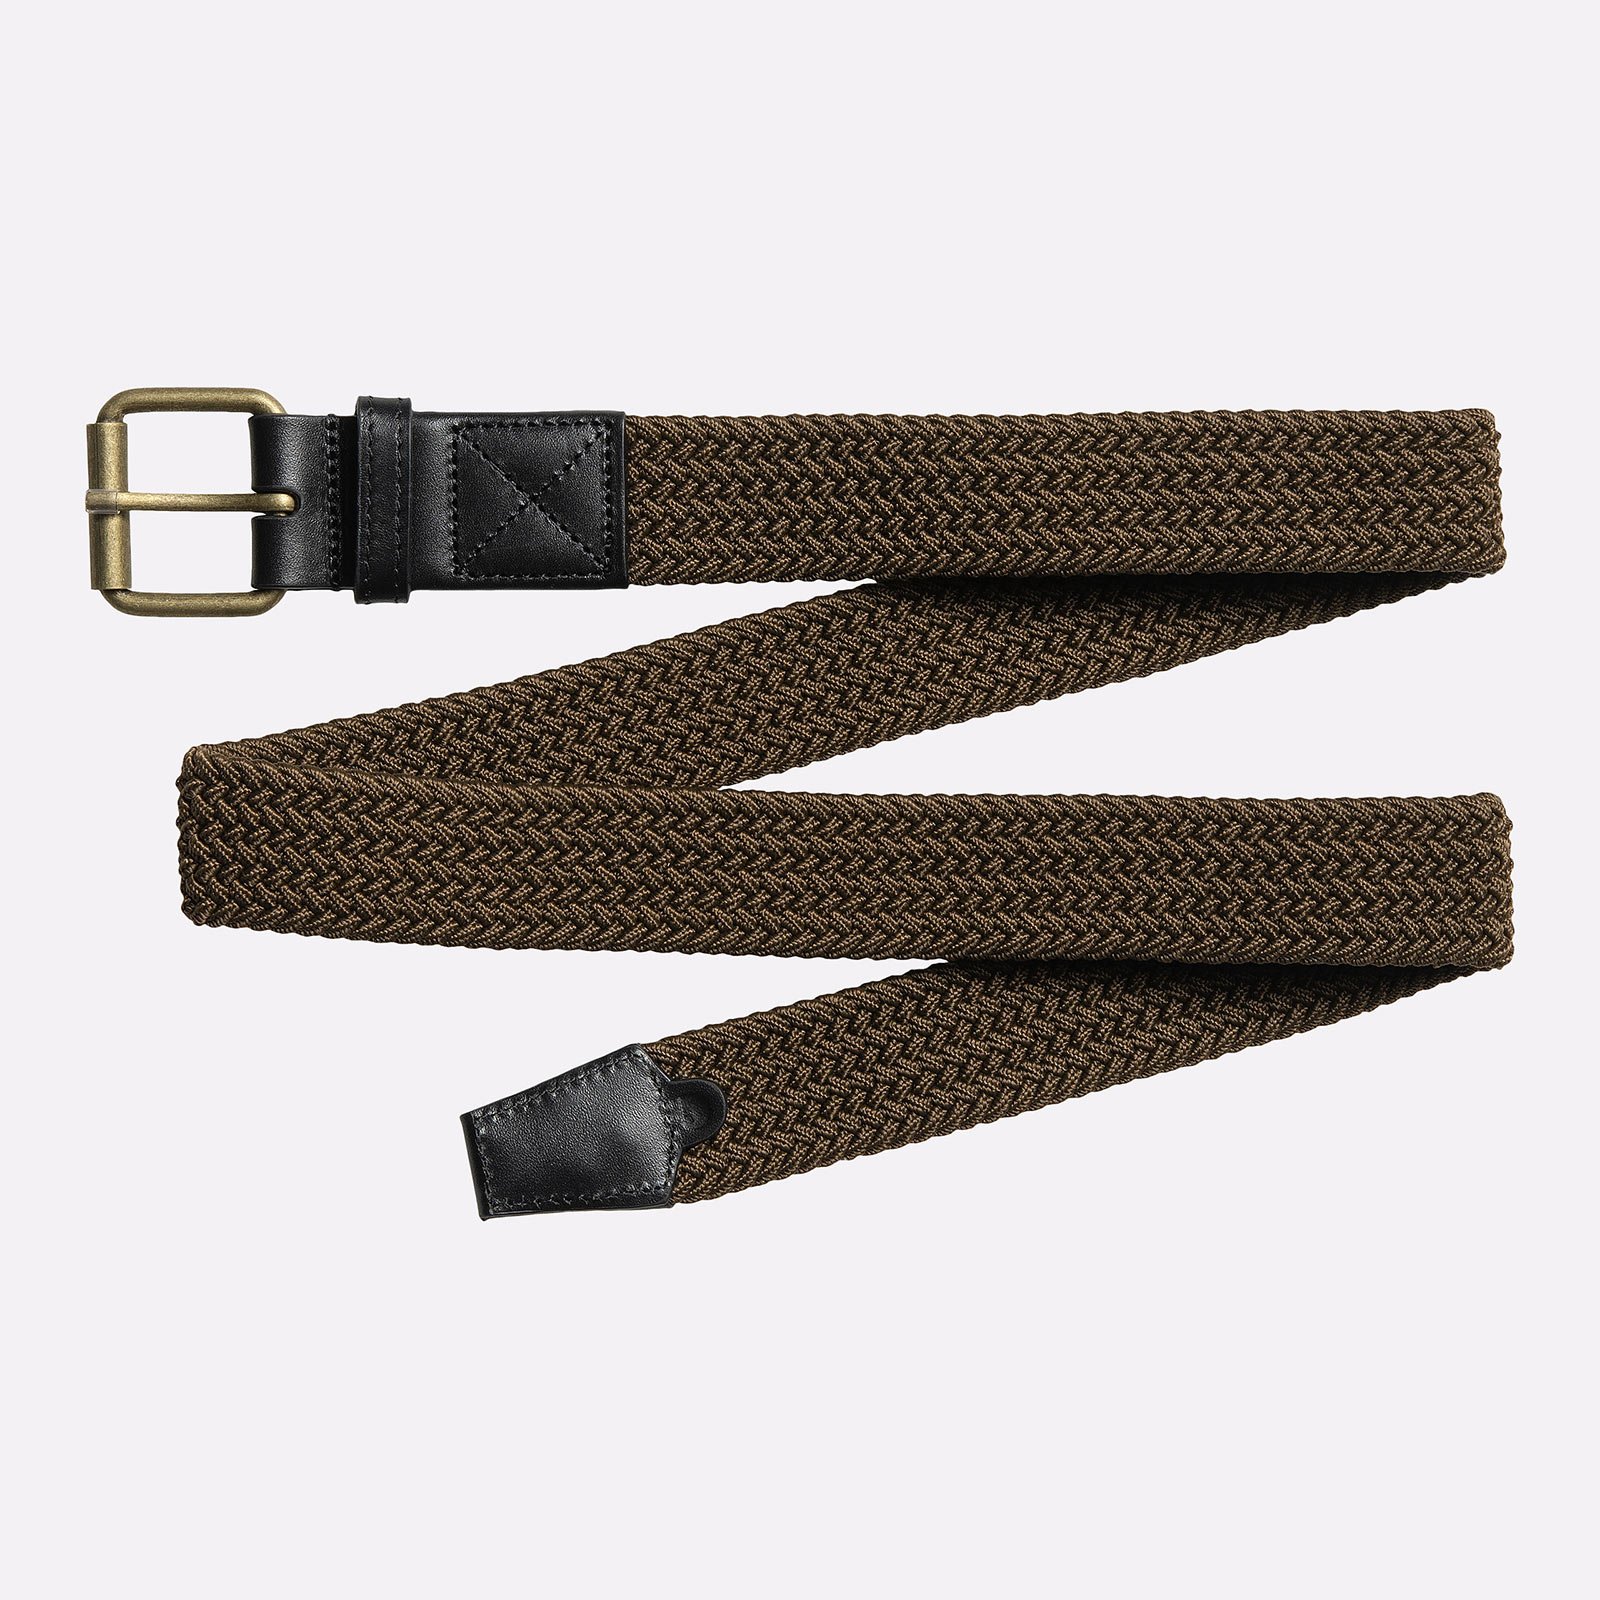  коричневый ремень Carhartt WIP Jackson Belt I015807-lumber/black - цена, описание, фото 1